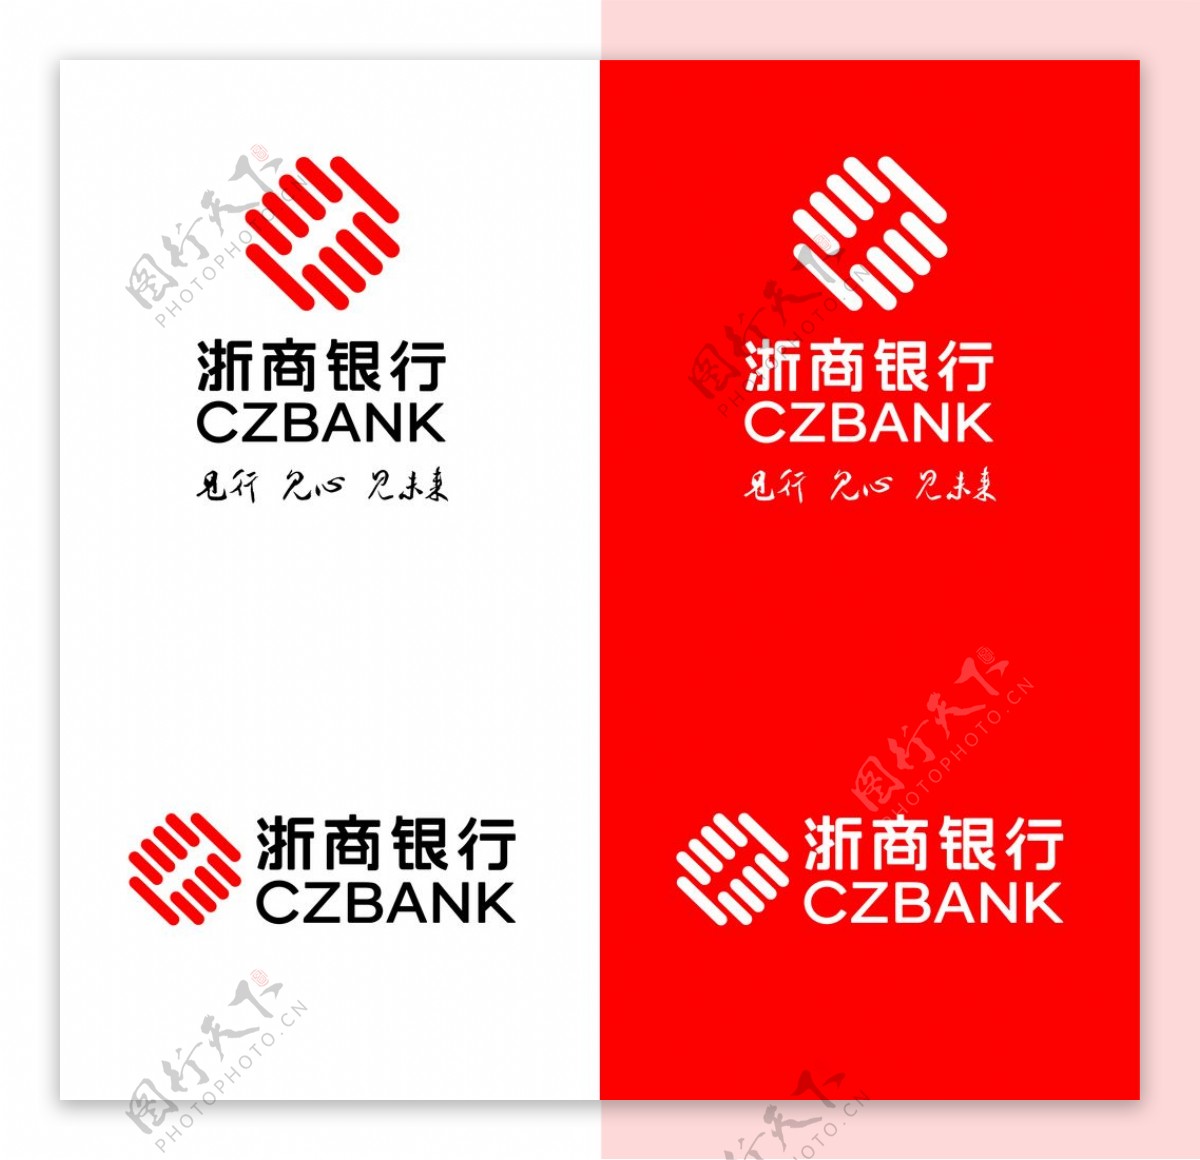 浙商银行Logo图片